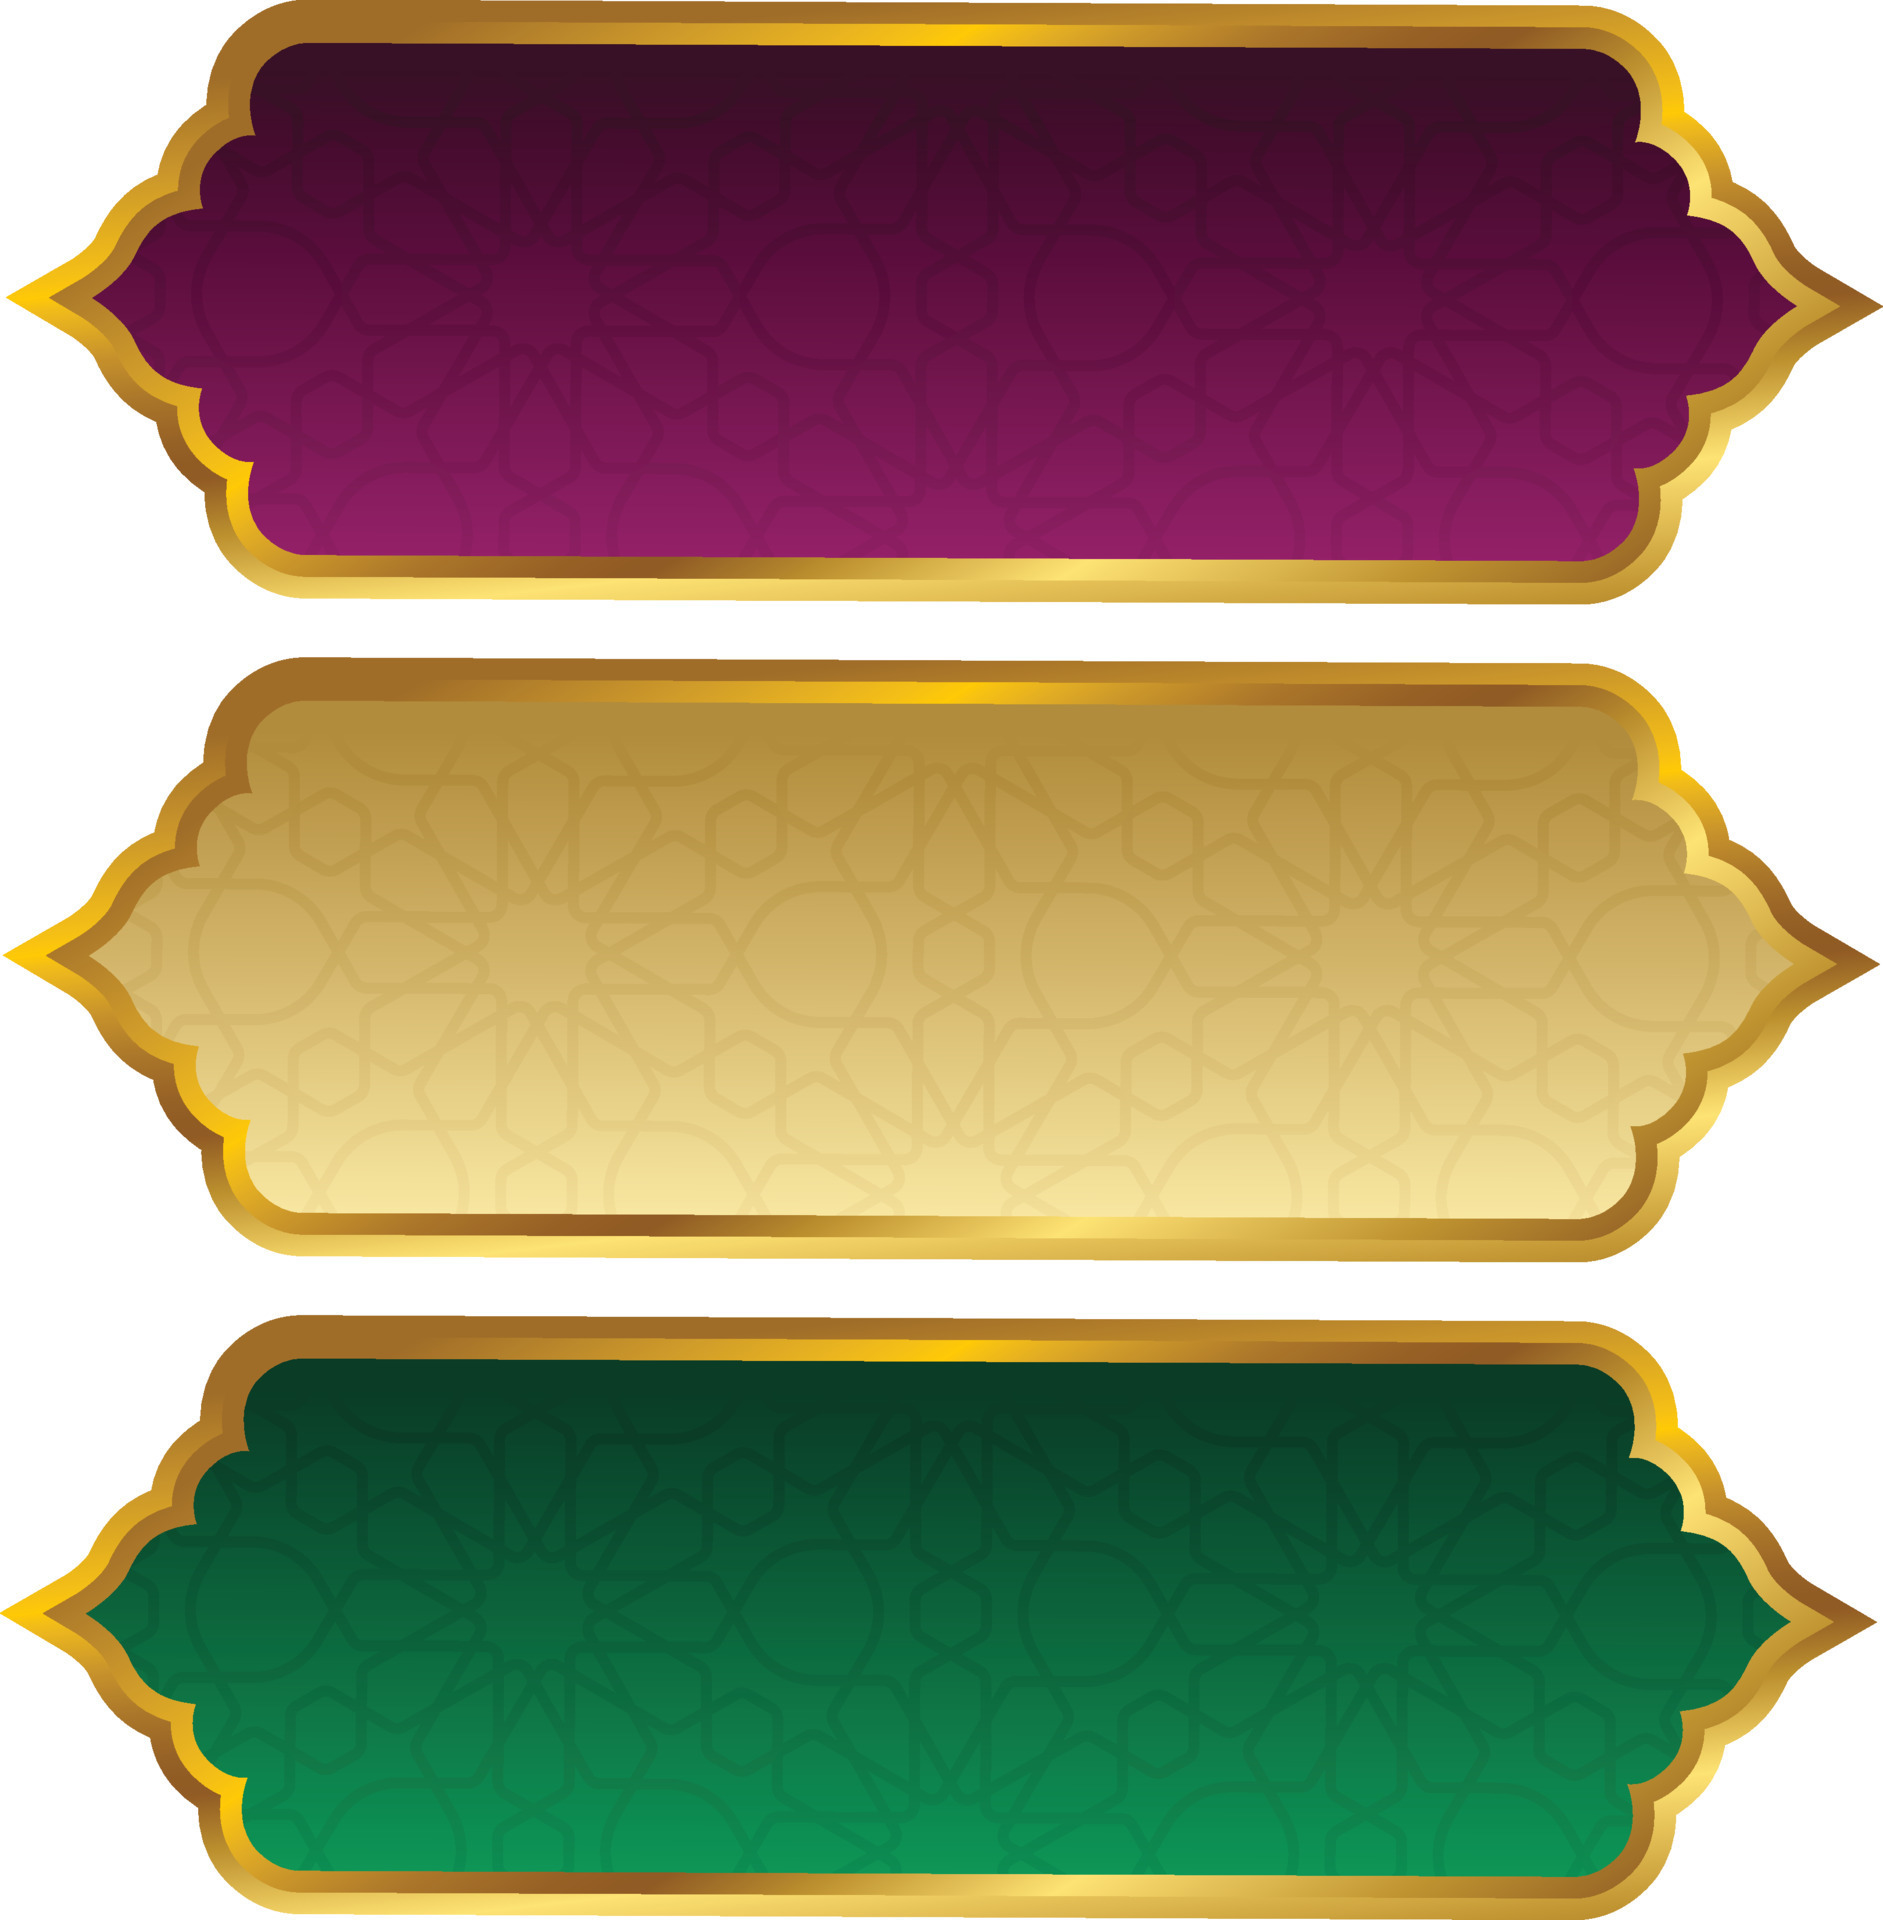 Hình ảnh banner Hội nghị Hội đồng Cộng tác Vương quốc Ả Rập với đường viền vàng sáng bóng và một thiết kế khắc nét như đồng tiền, chắc chắn sẽ khiến bạn trầm trồ về đẳng cấp và quý phái.